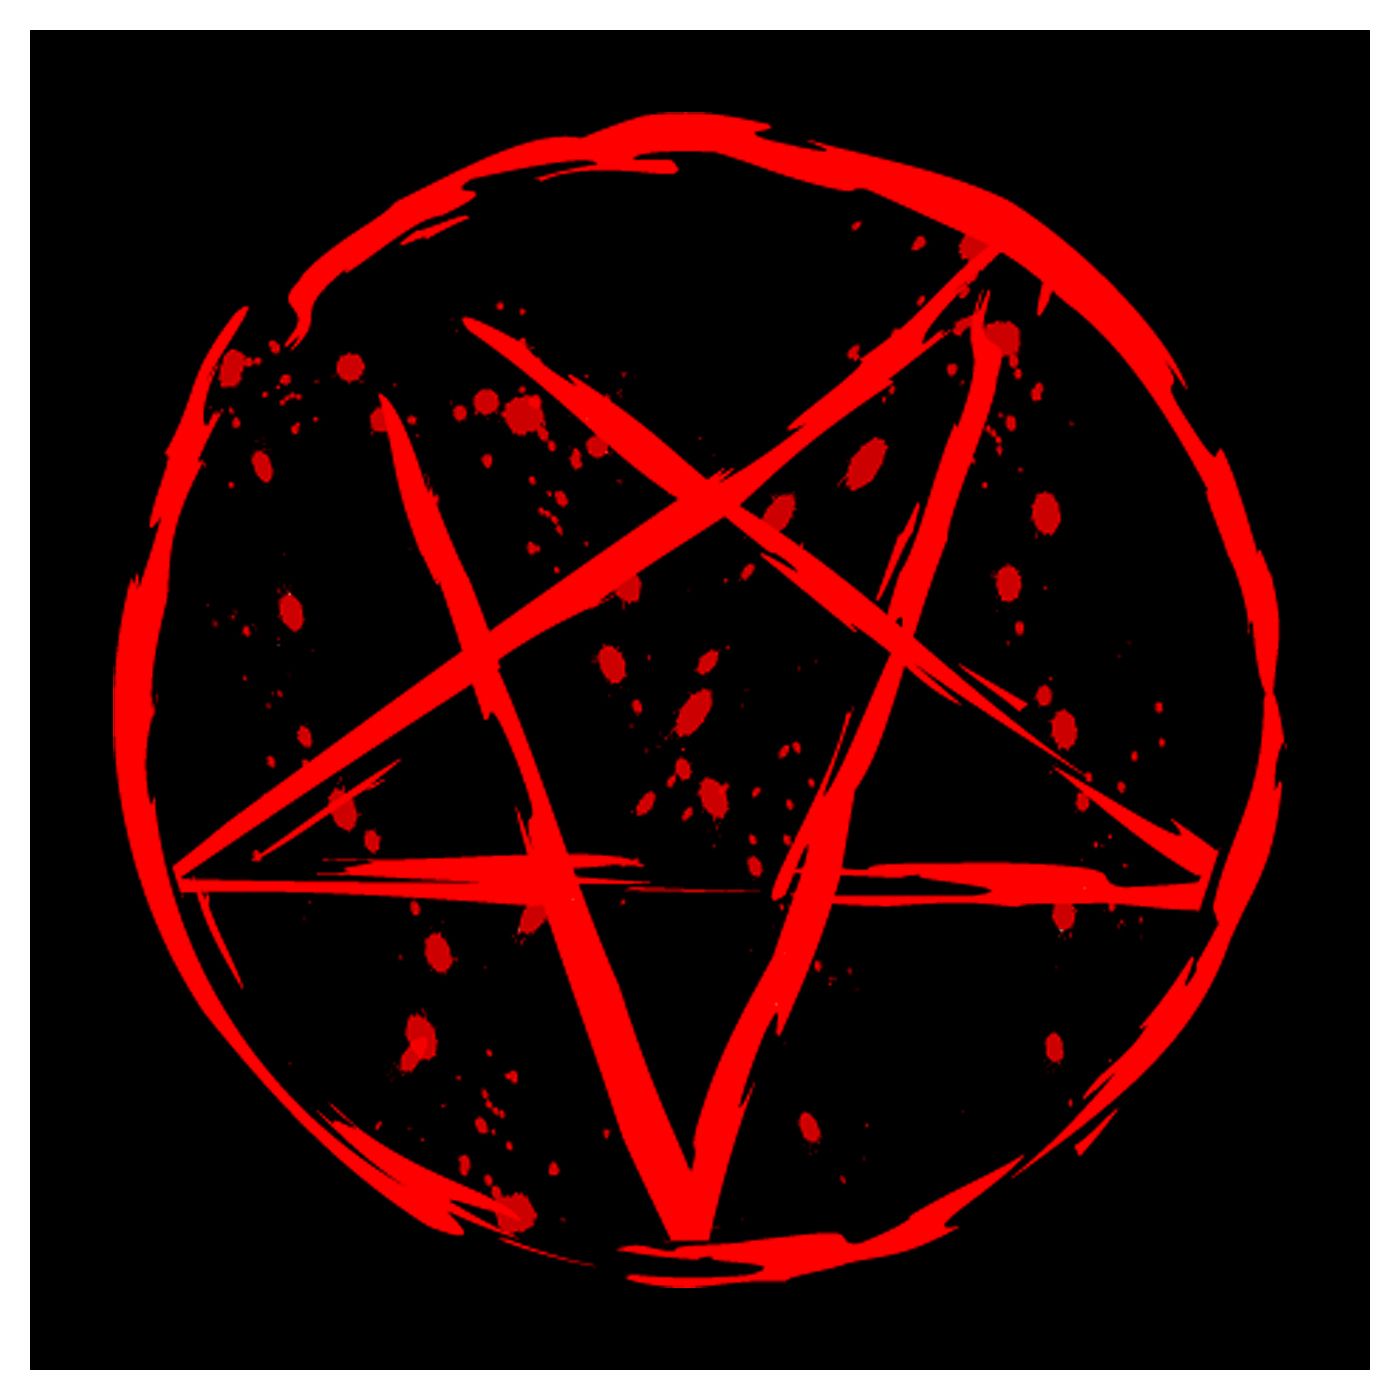 Satanismo